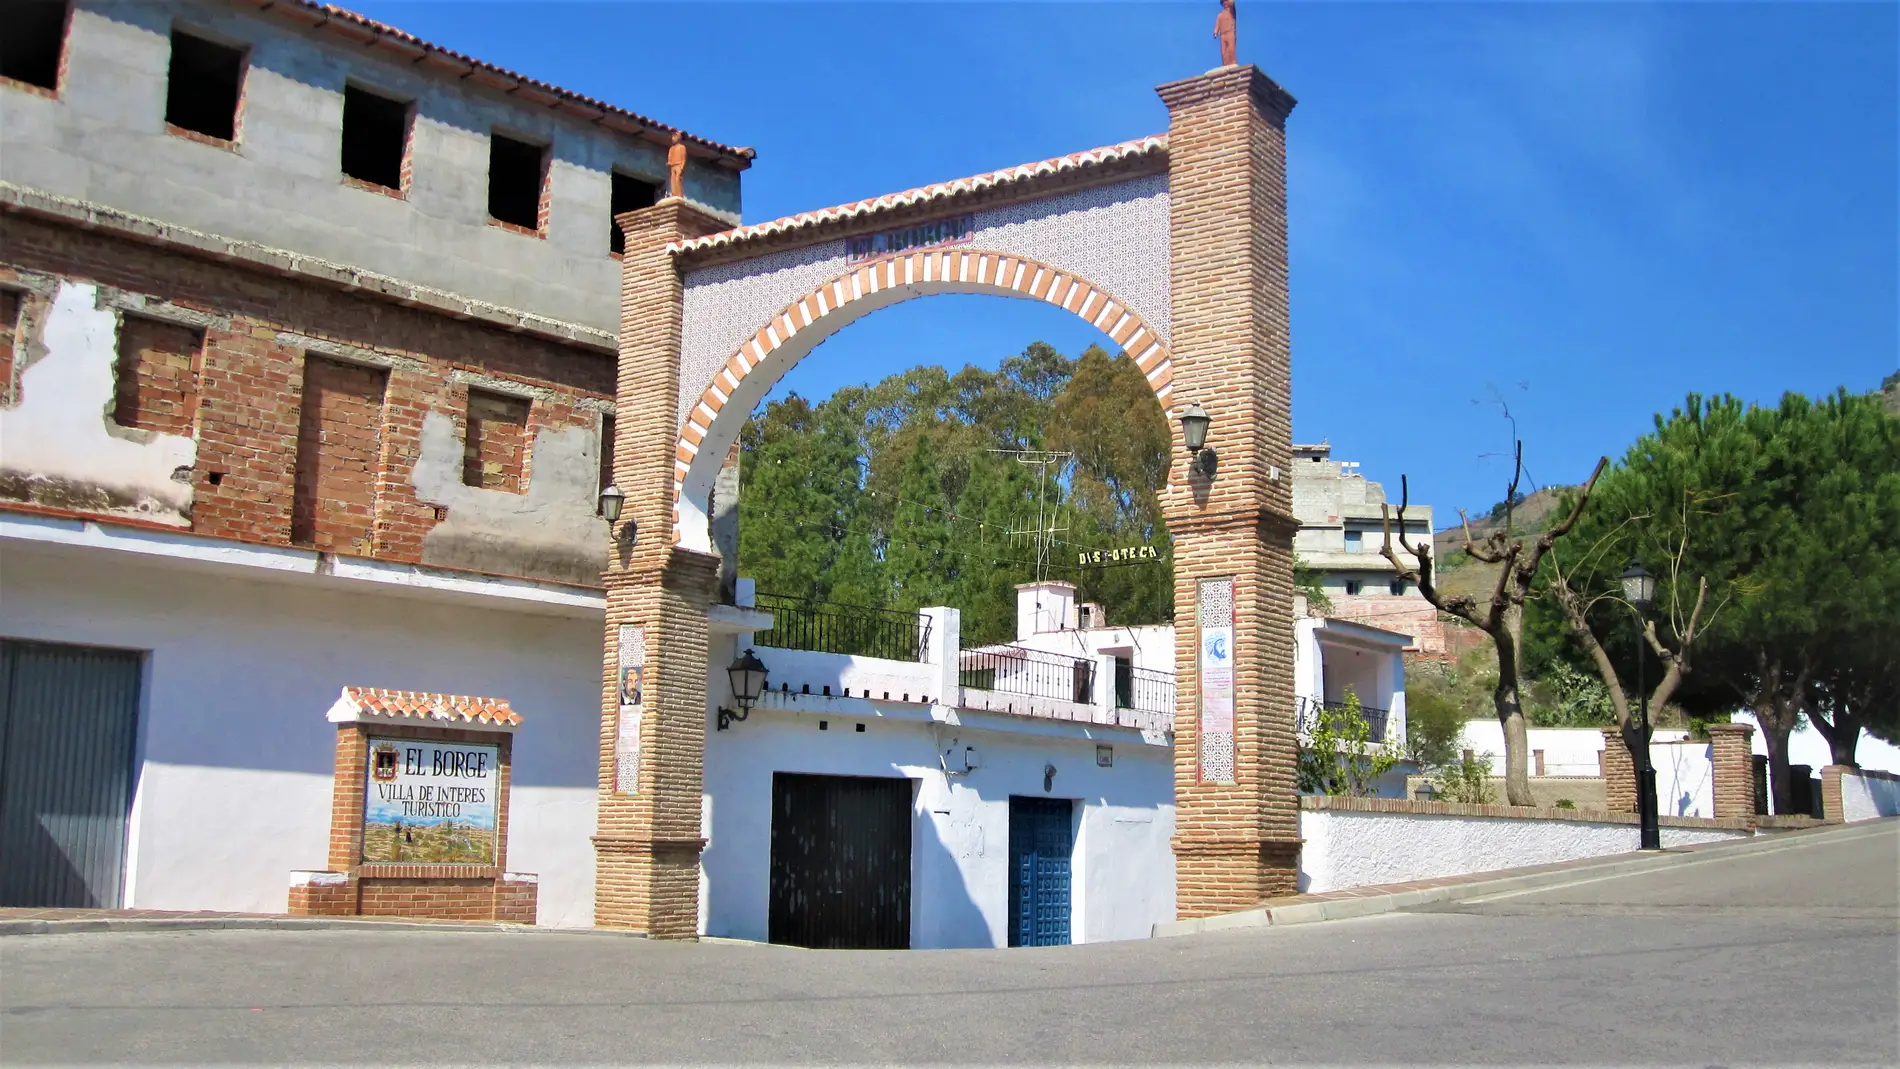 Arco de la Pasa: historia de uno de los arcos más importantes de Andalucía